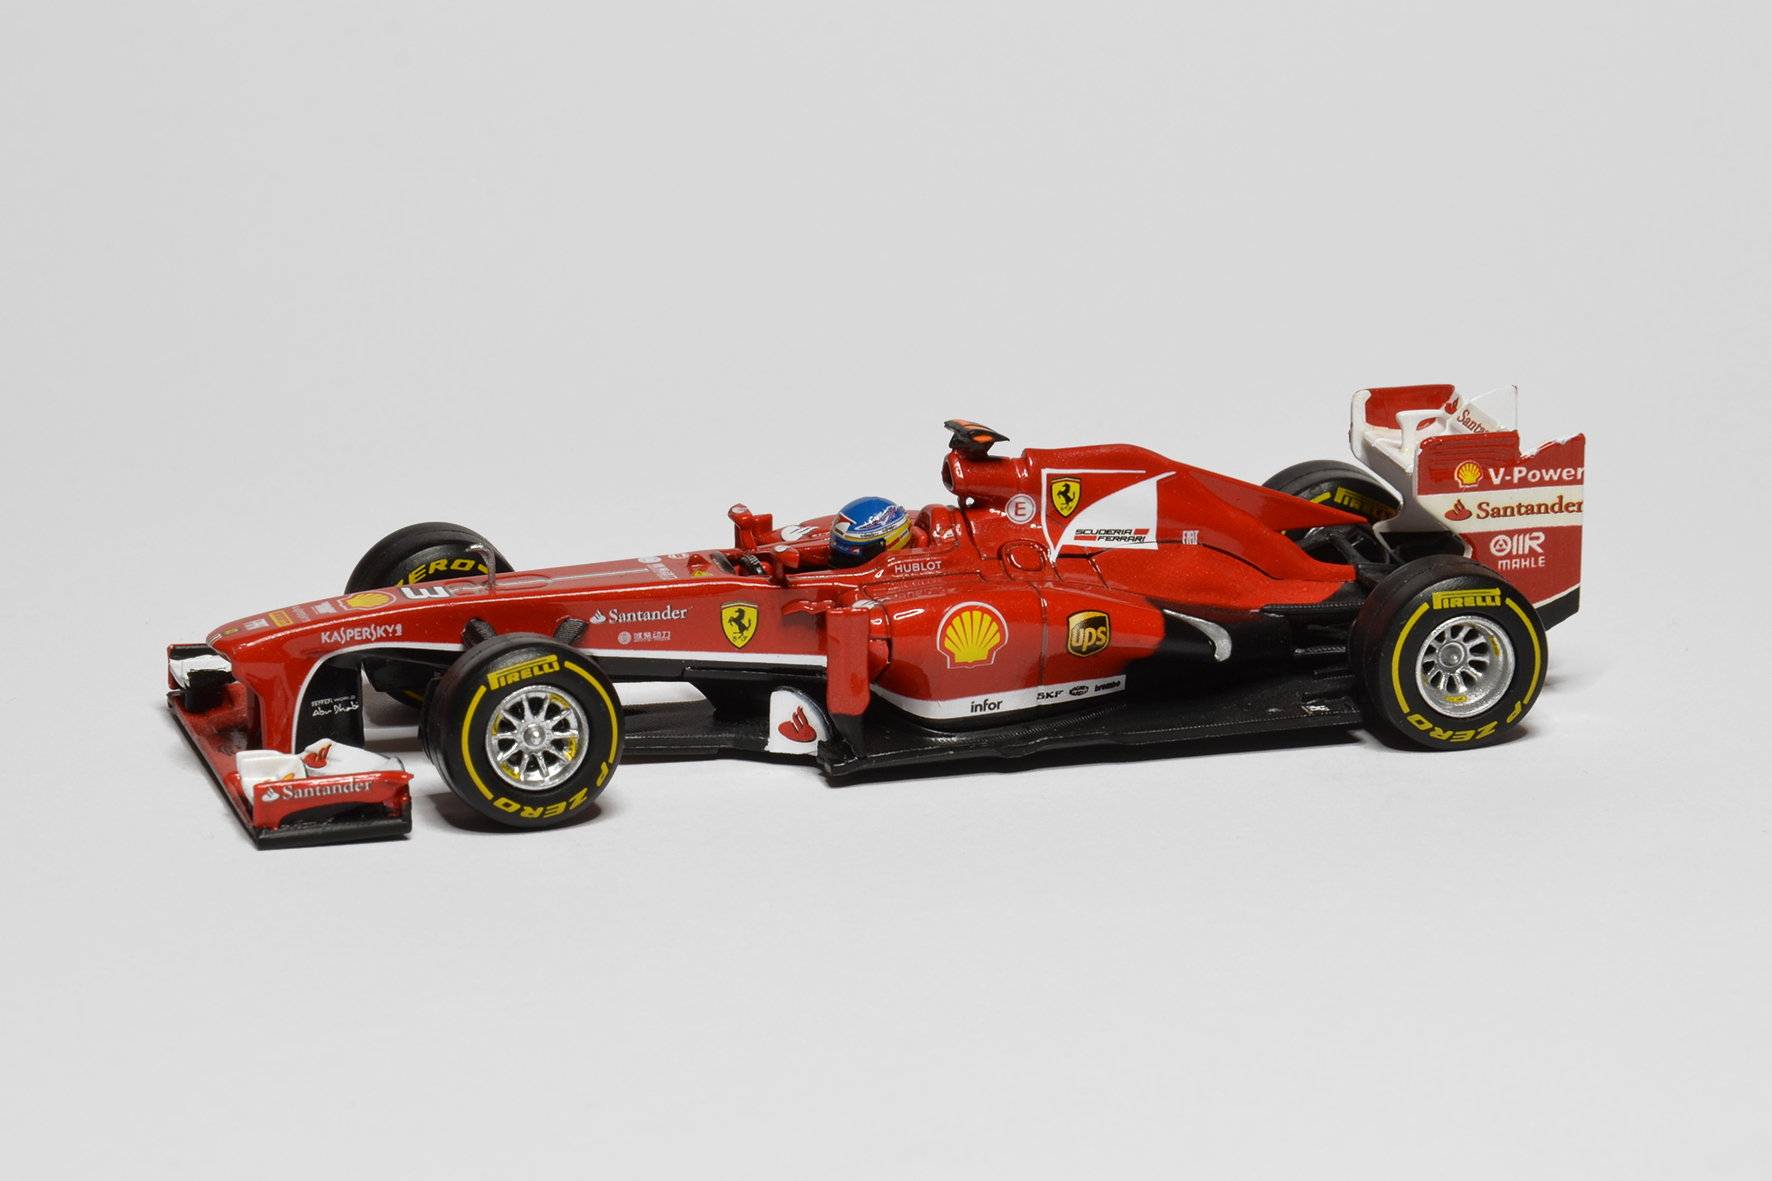 Ferrari F138 | 2013 | Fernando Alonso | Hot Wheels